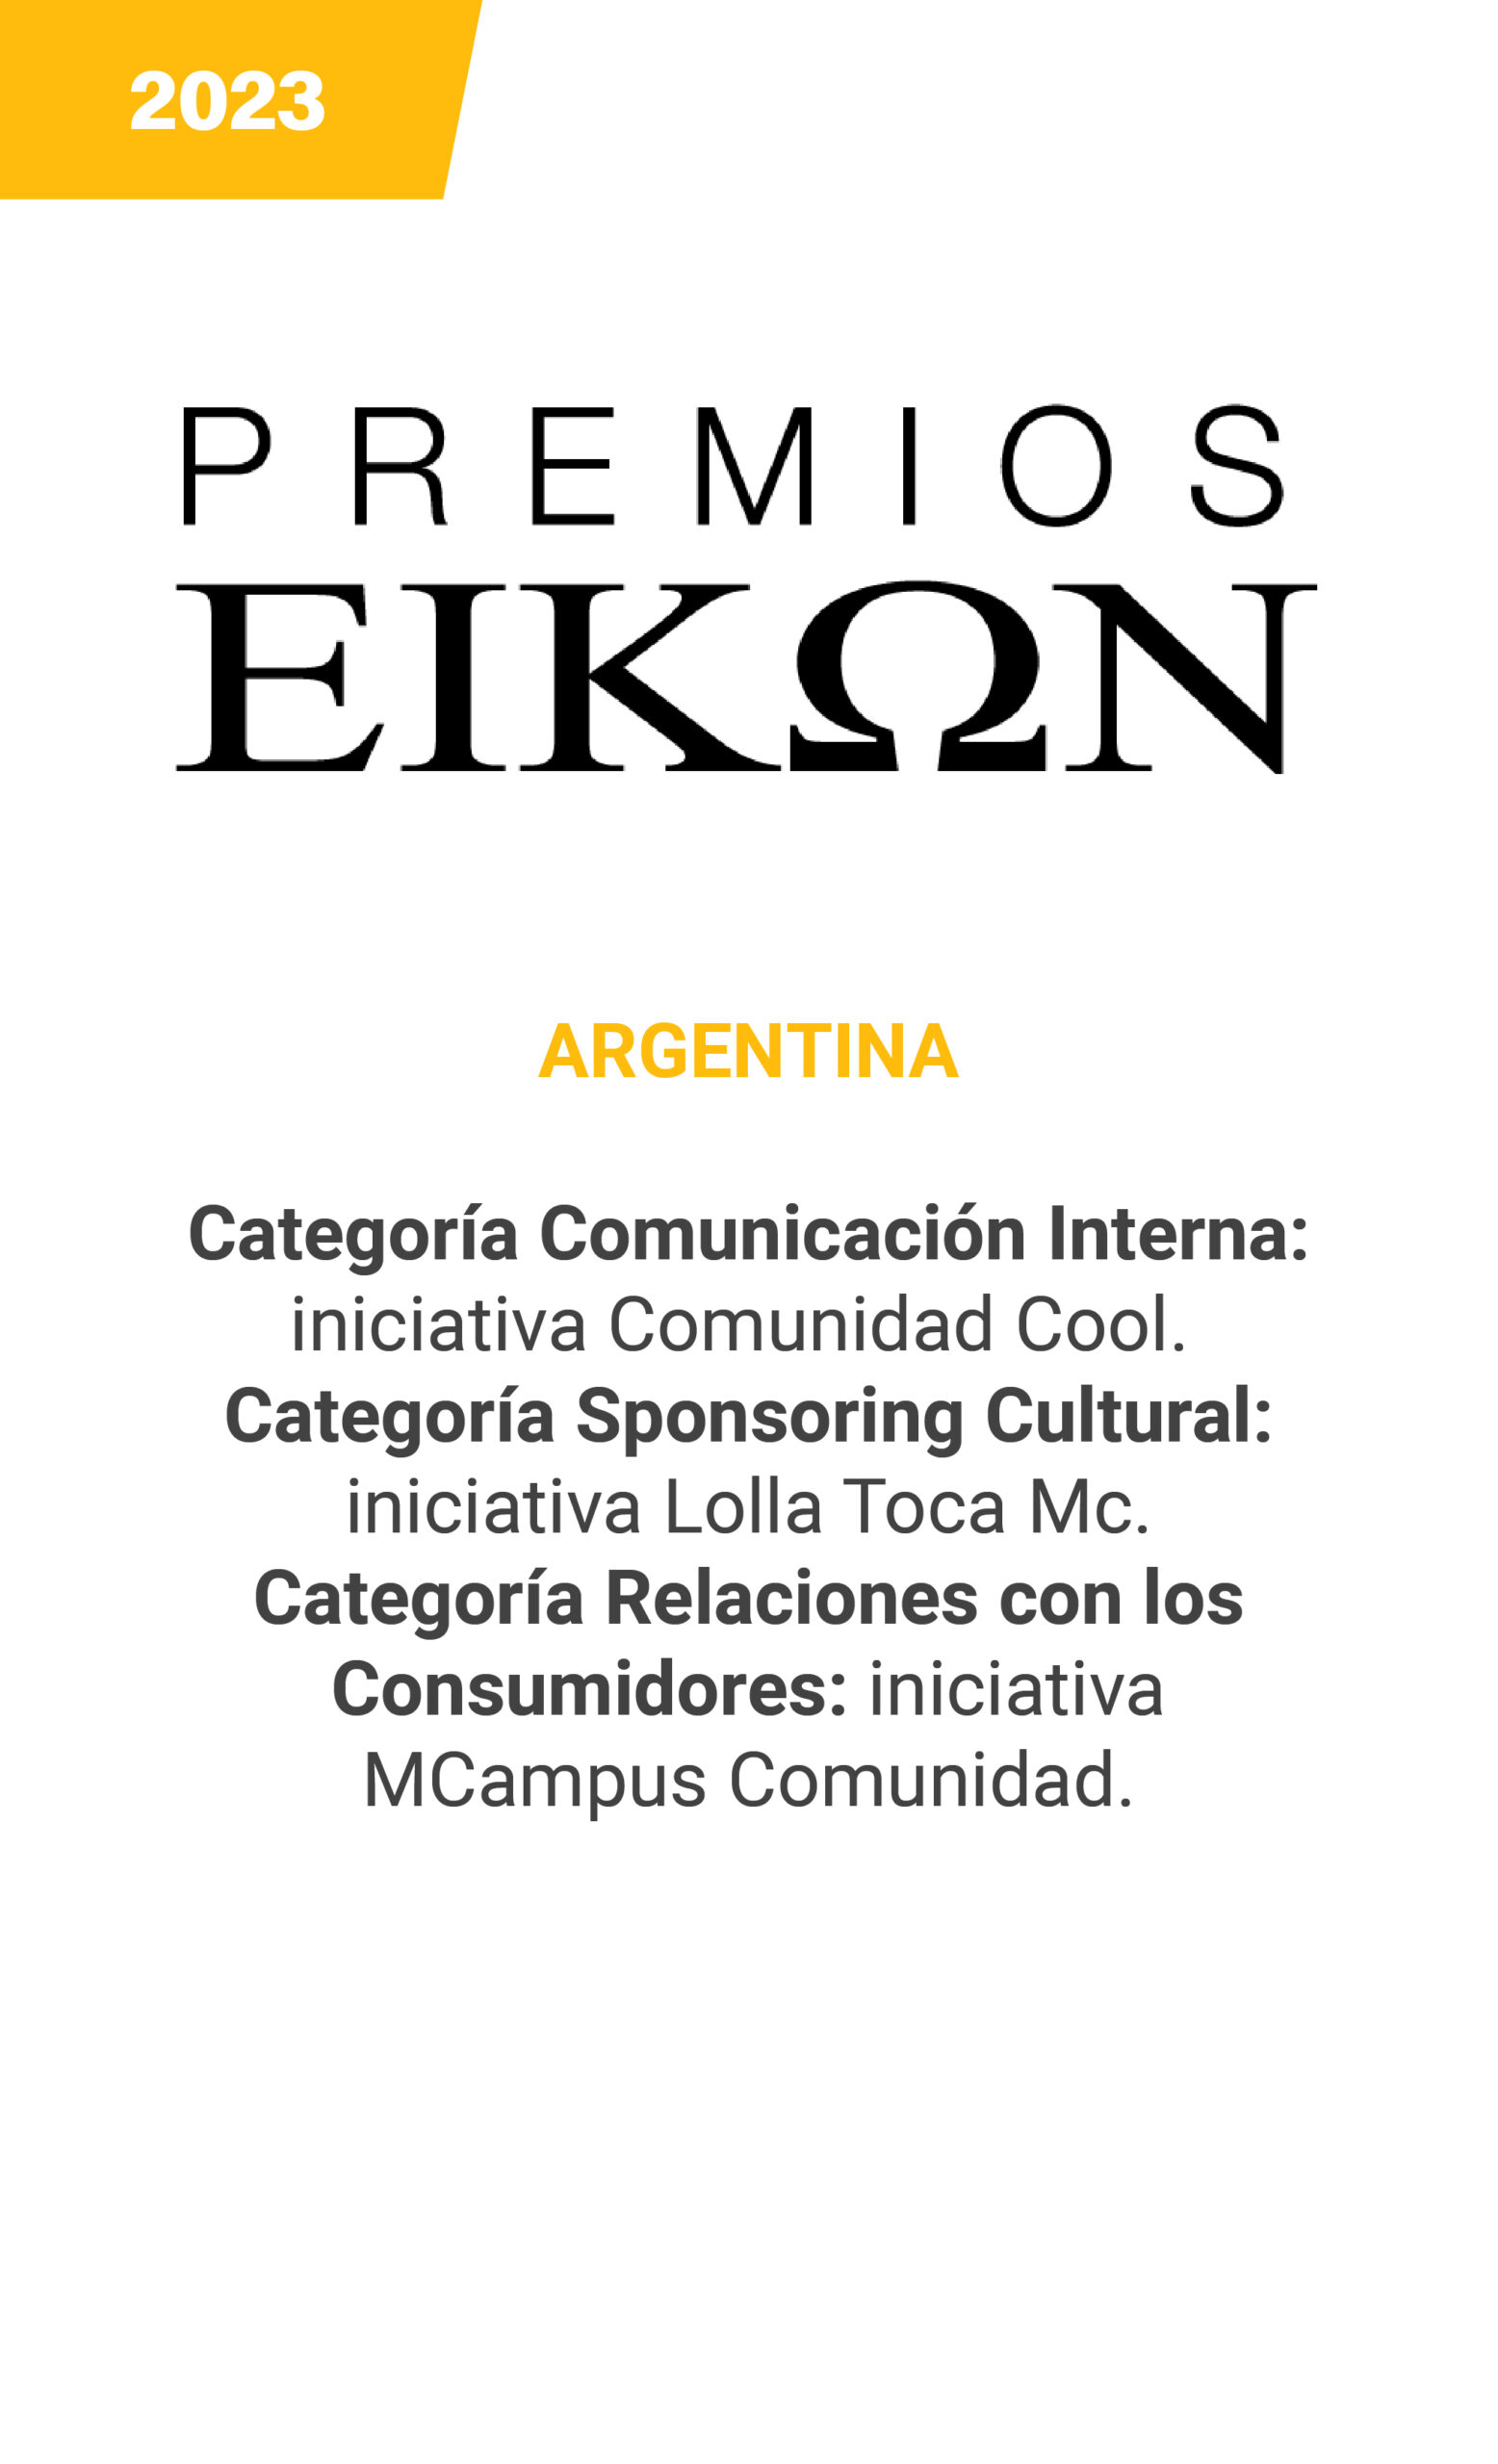 Eikon - Argentina - 2023 mobile